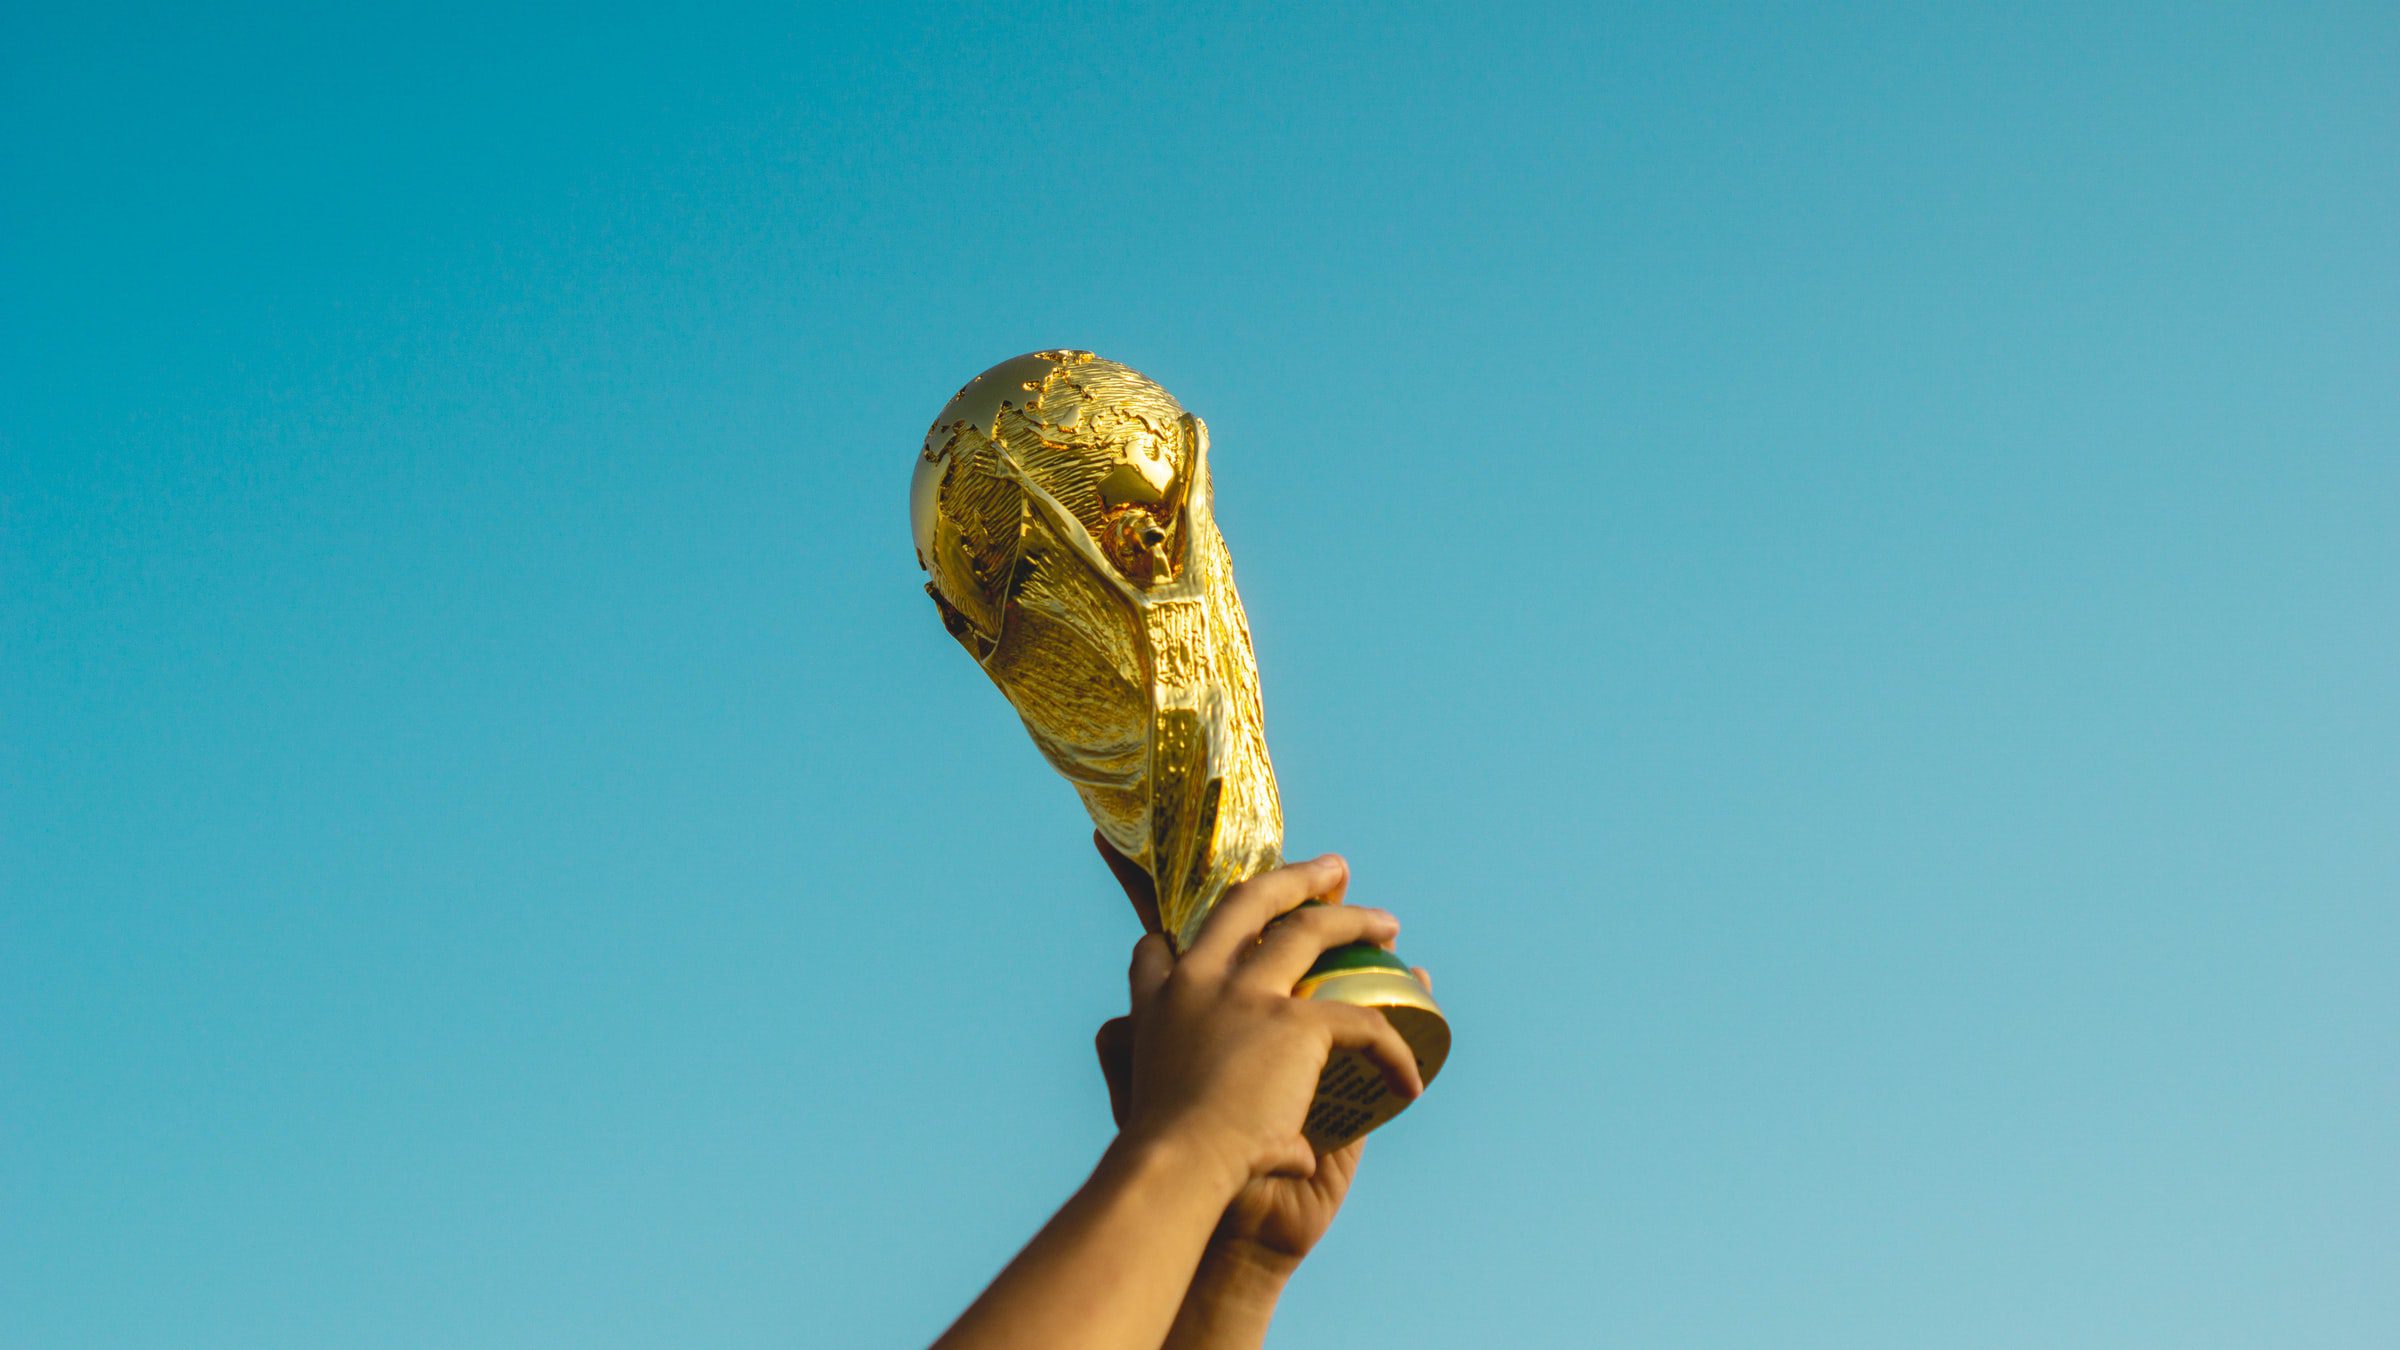 Copa do mundo 2026: 4 dicas de como investir para a sua viagem